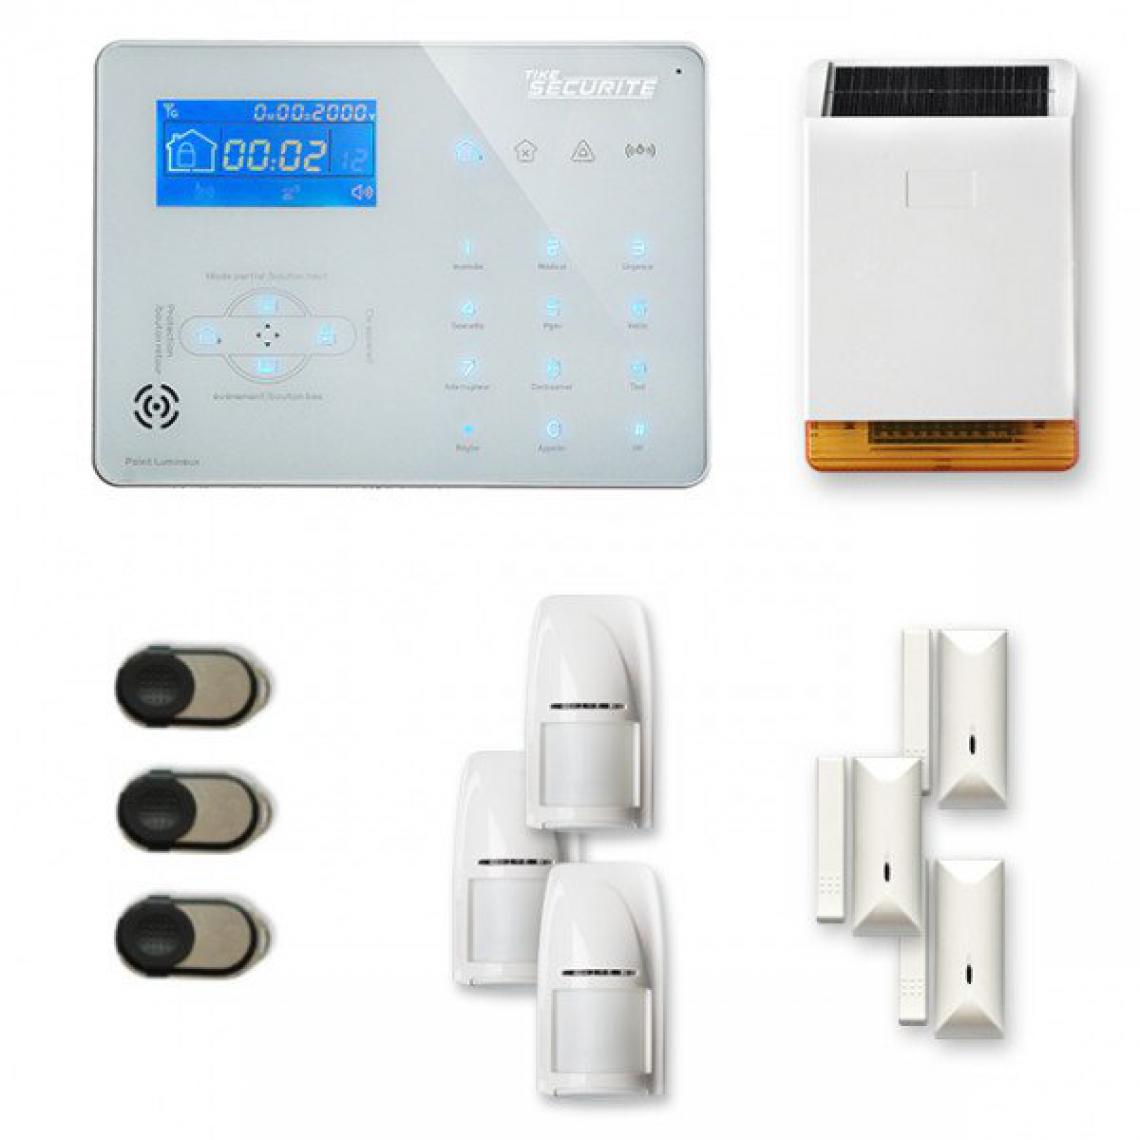 Tike Securite - Alarme maison sans fil ICE-B17 Compatible Box internet - Alarme connectée